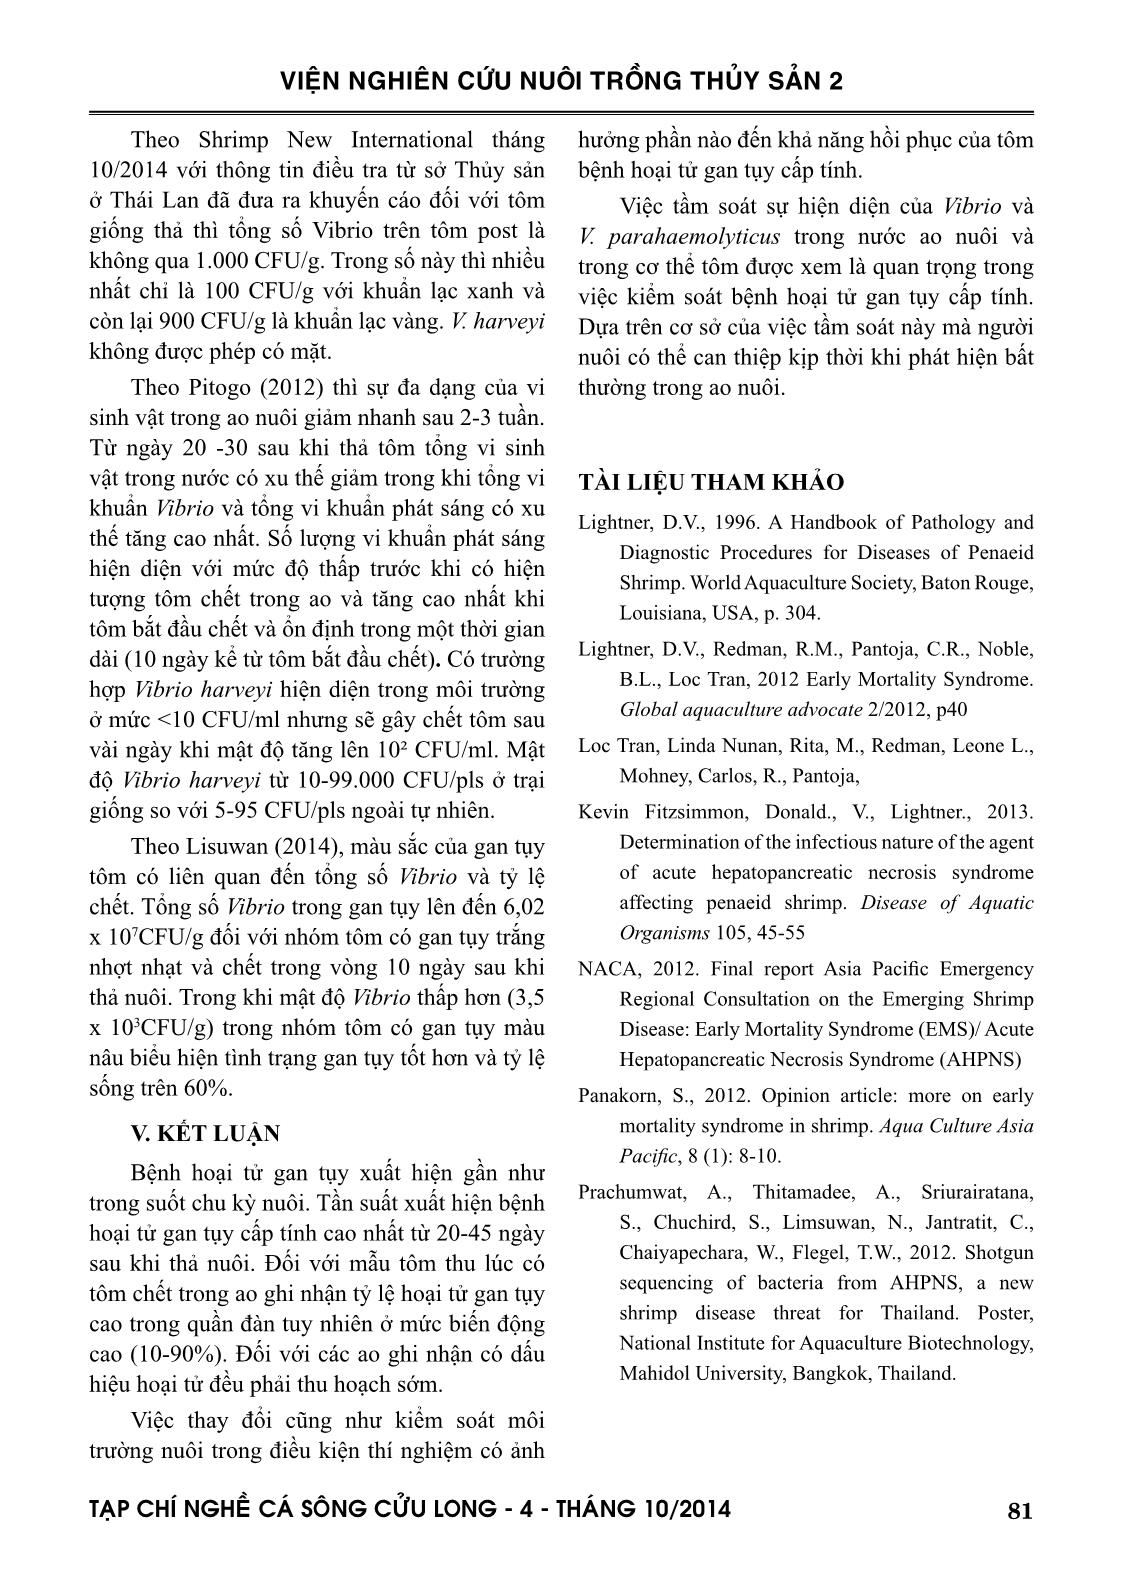 Một số kết quả về nghiên cứu bệnh hoại tử gan tụy cấp tính trên tôm nuôi ở đồng bằng sông Cửu Long và biện pháp kiểm soát trang 9